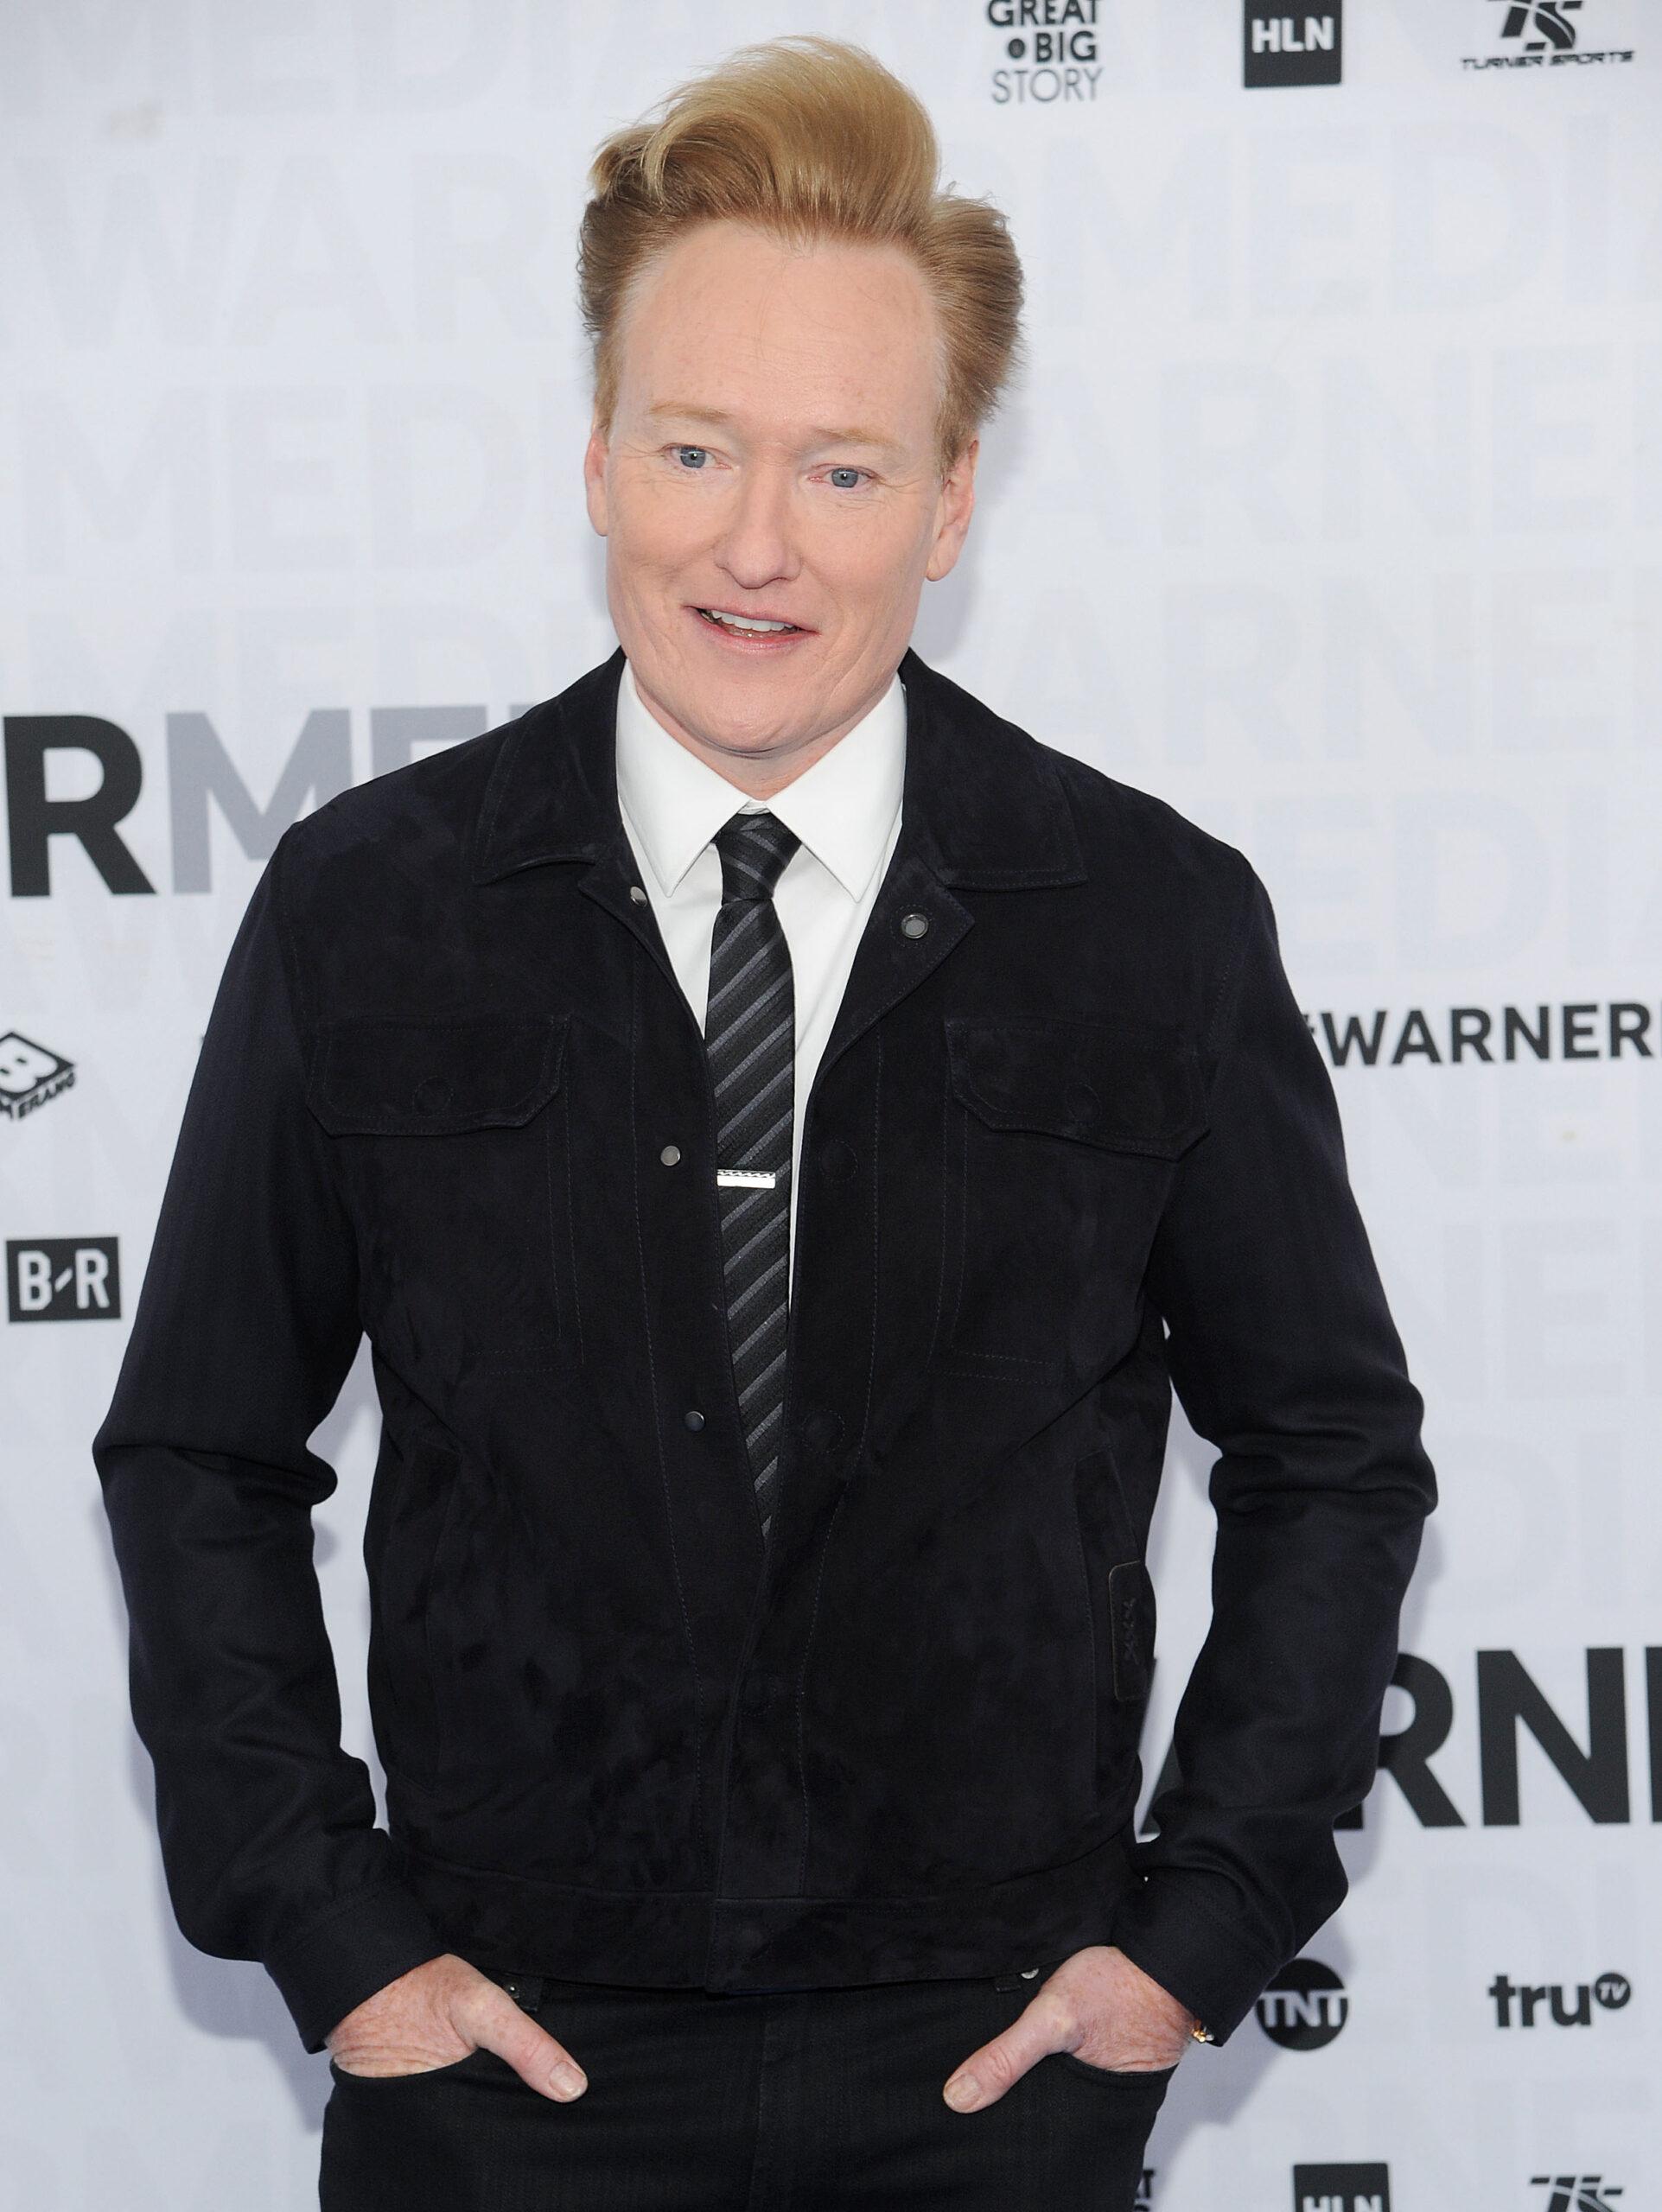 Conan O'Brien WarnerMedia Upfront 2019 - Arrivals